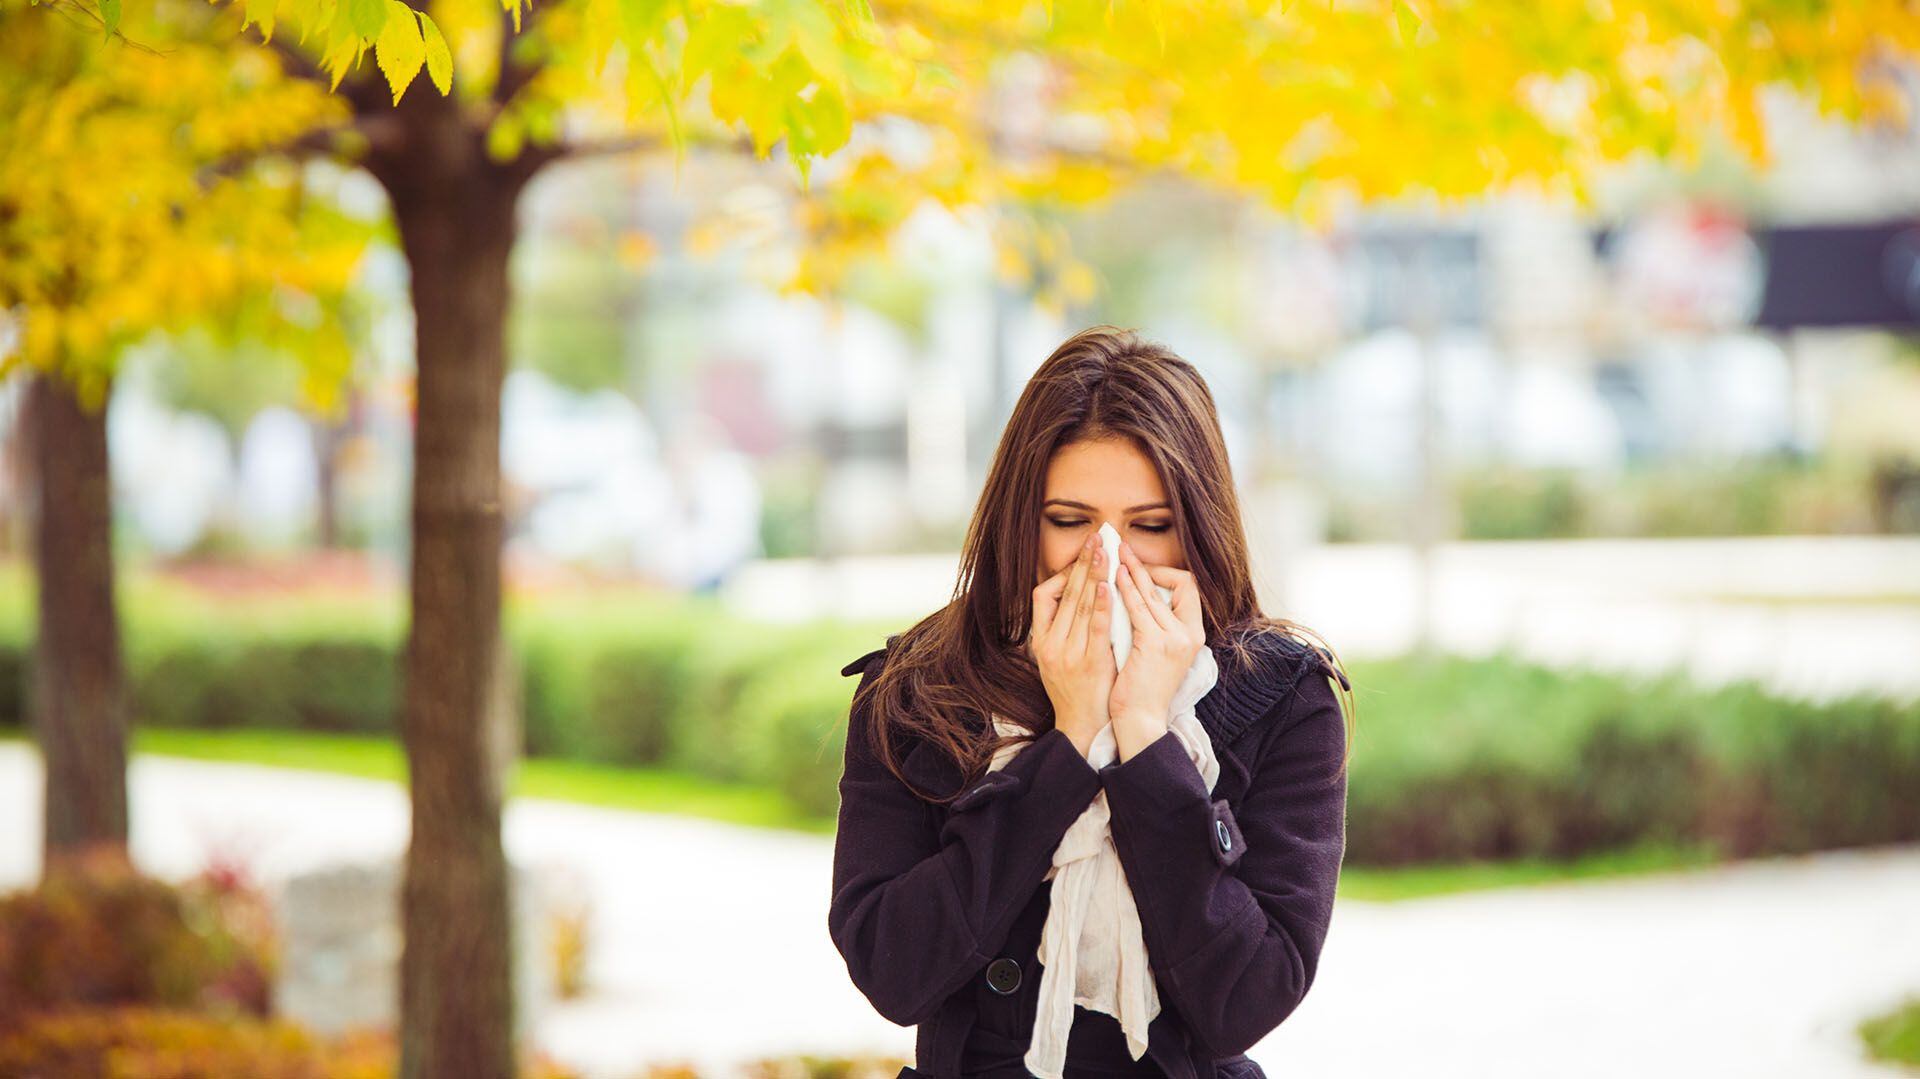 El cambio climático también contribuye a más casos de enfermedades alérgicas (Getty Images)